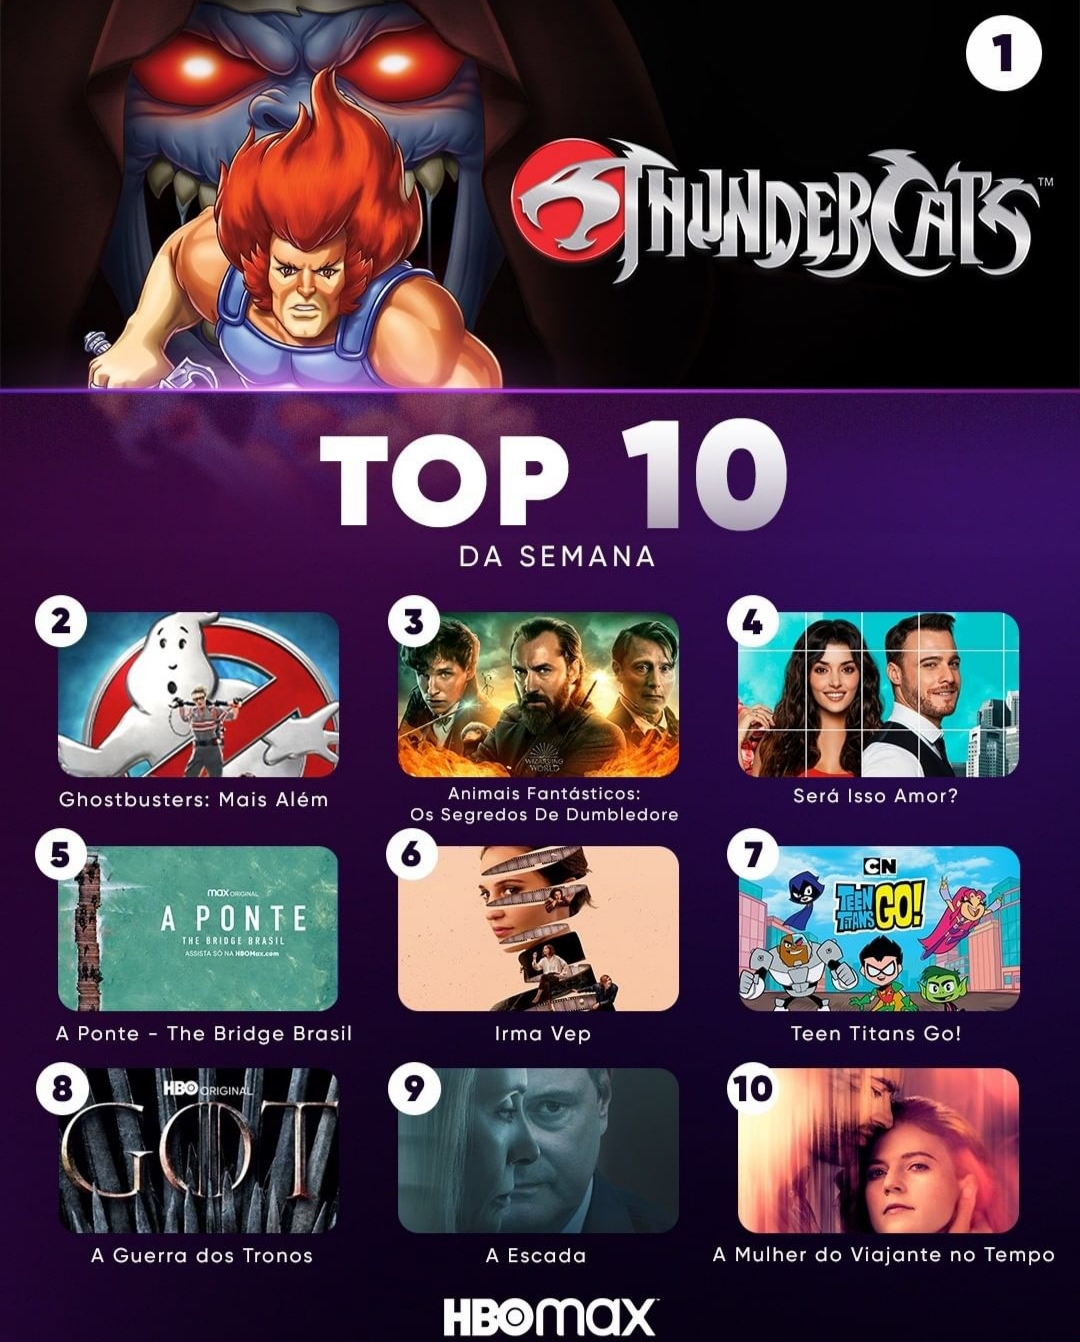 ThunderCats: HBO Max vai adicionar versão clássica ao catálogo